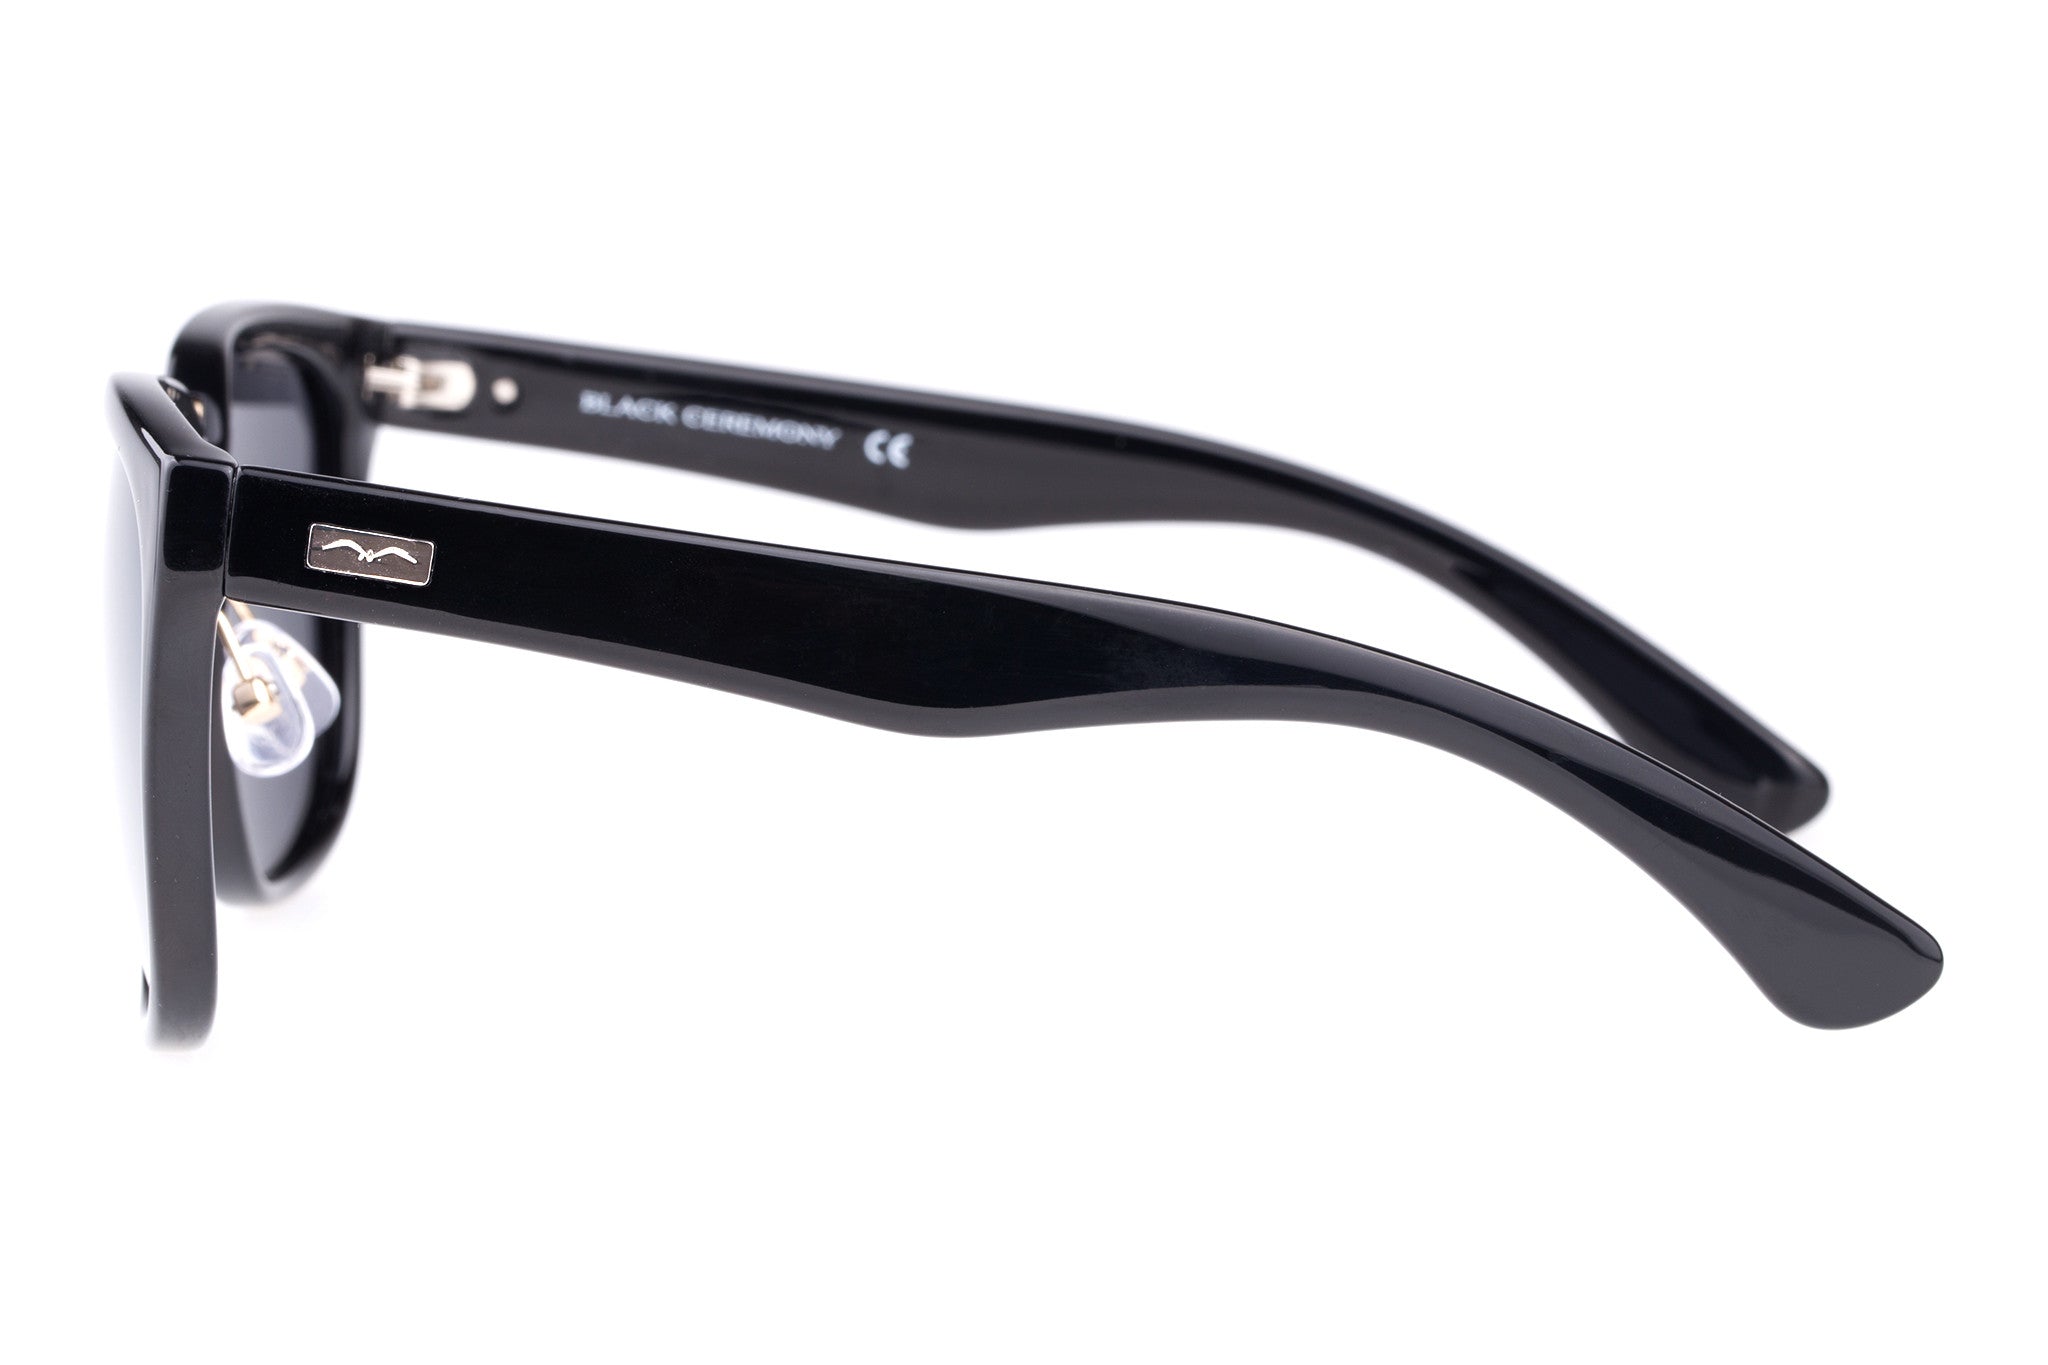 WHENEVER Black Sunglasses | Online Eyeglasses Store